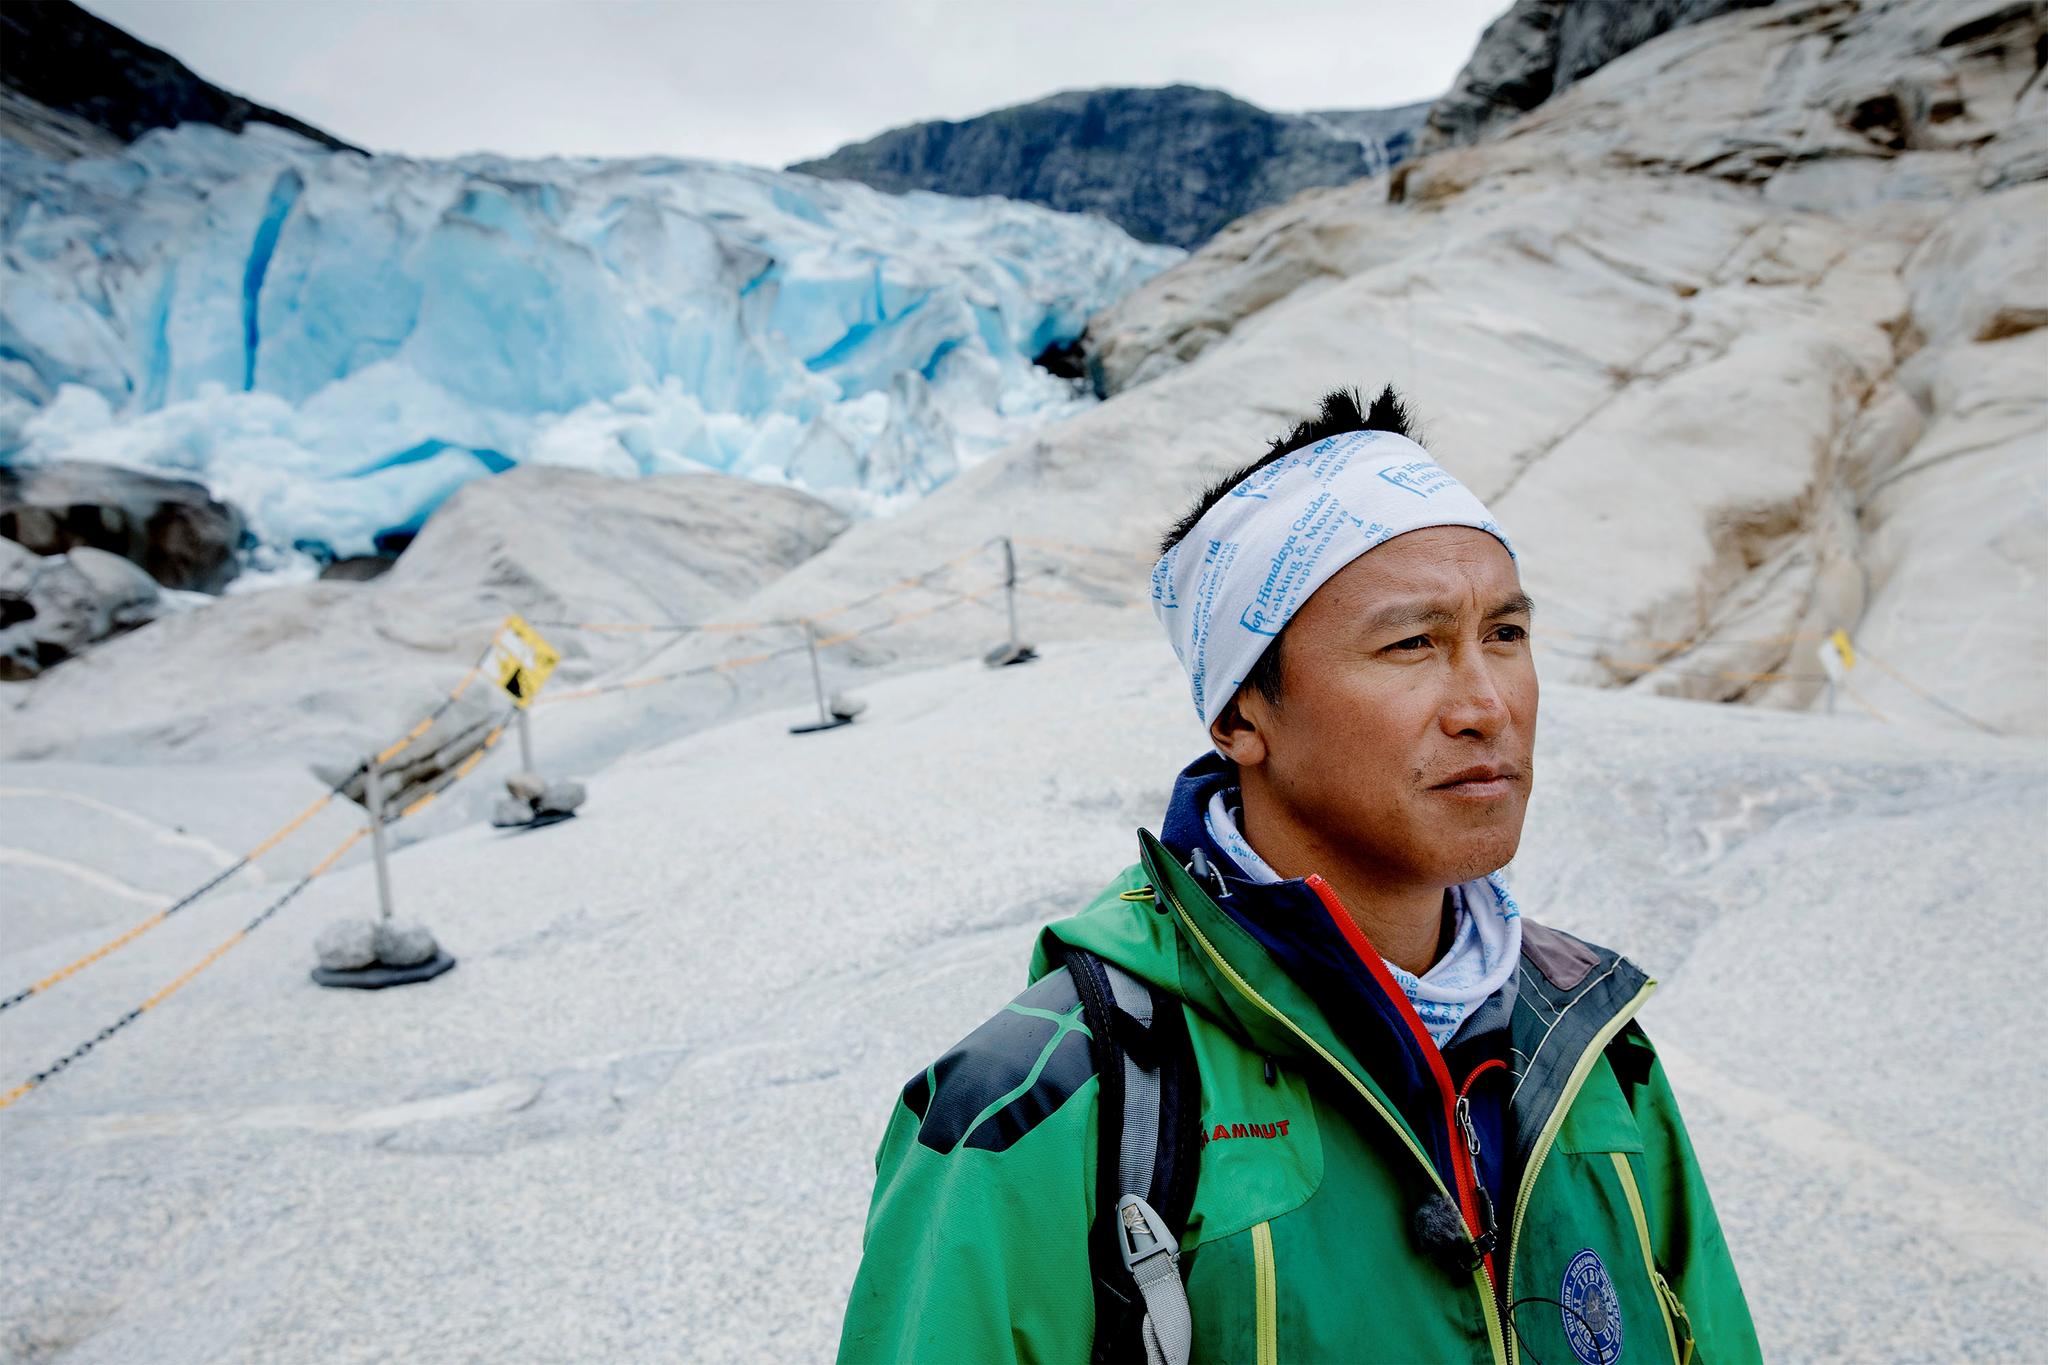 BLE ØYENVITNE: Tshering Pande Bhote (42) er guide i Jostedalen Breførarlag og ble øyenvitne til ulykken søndag kveld.